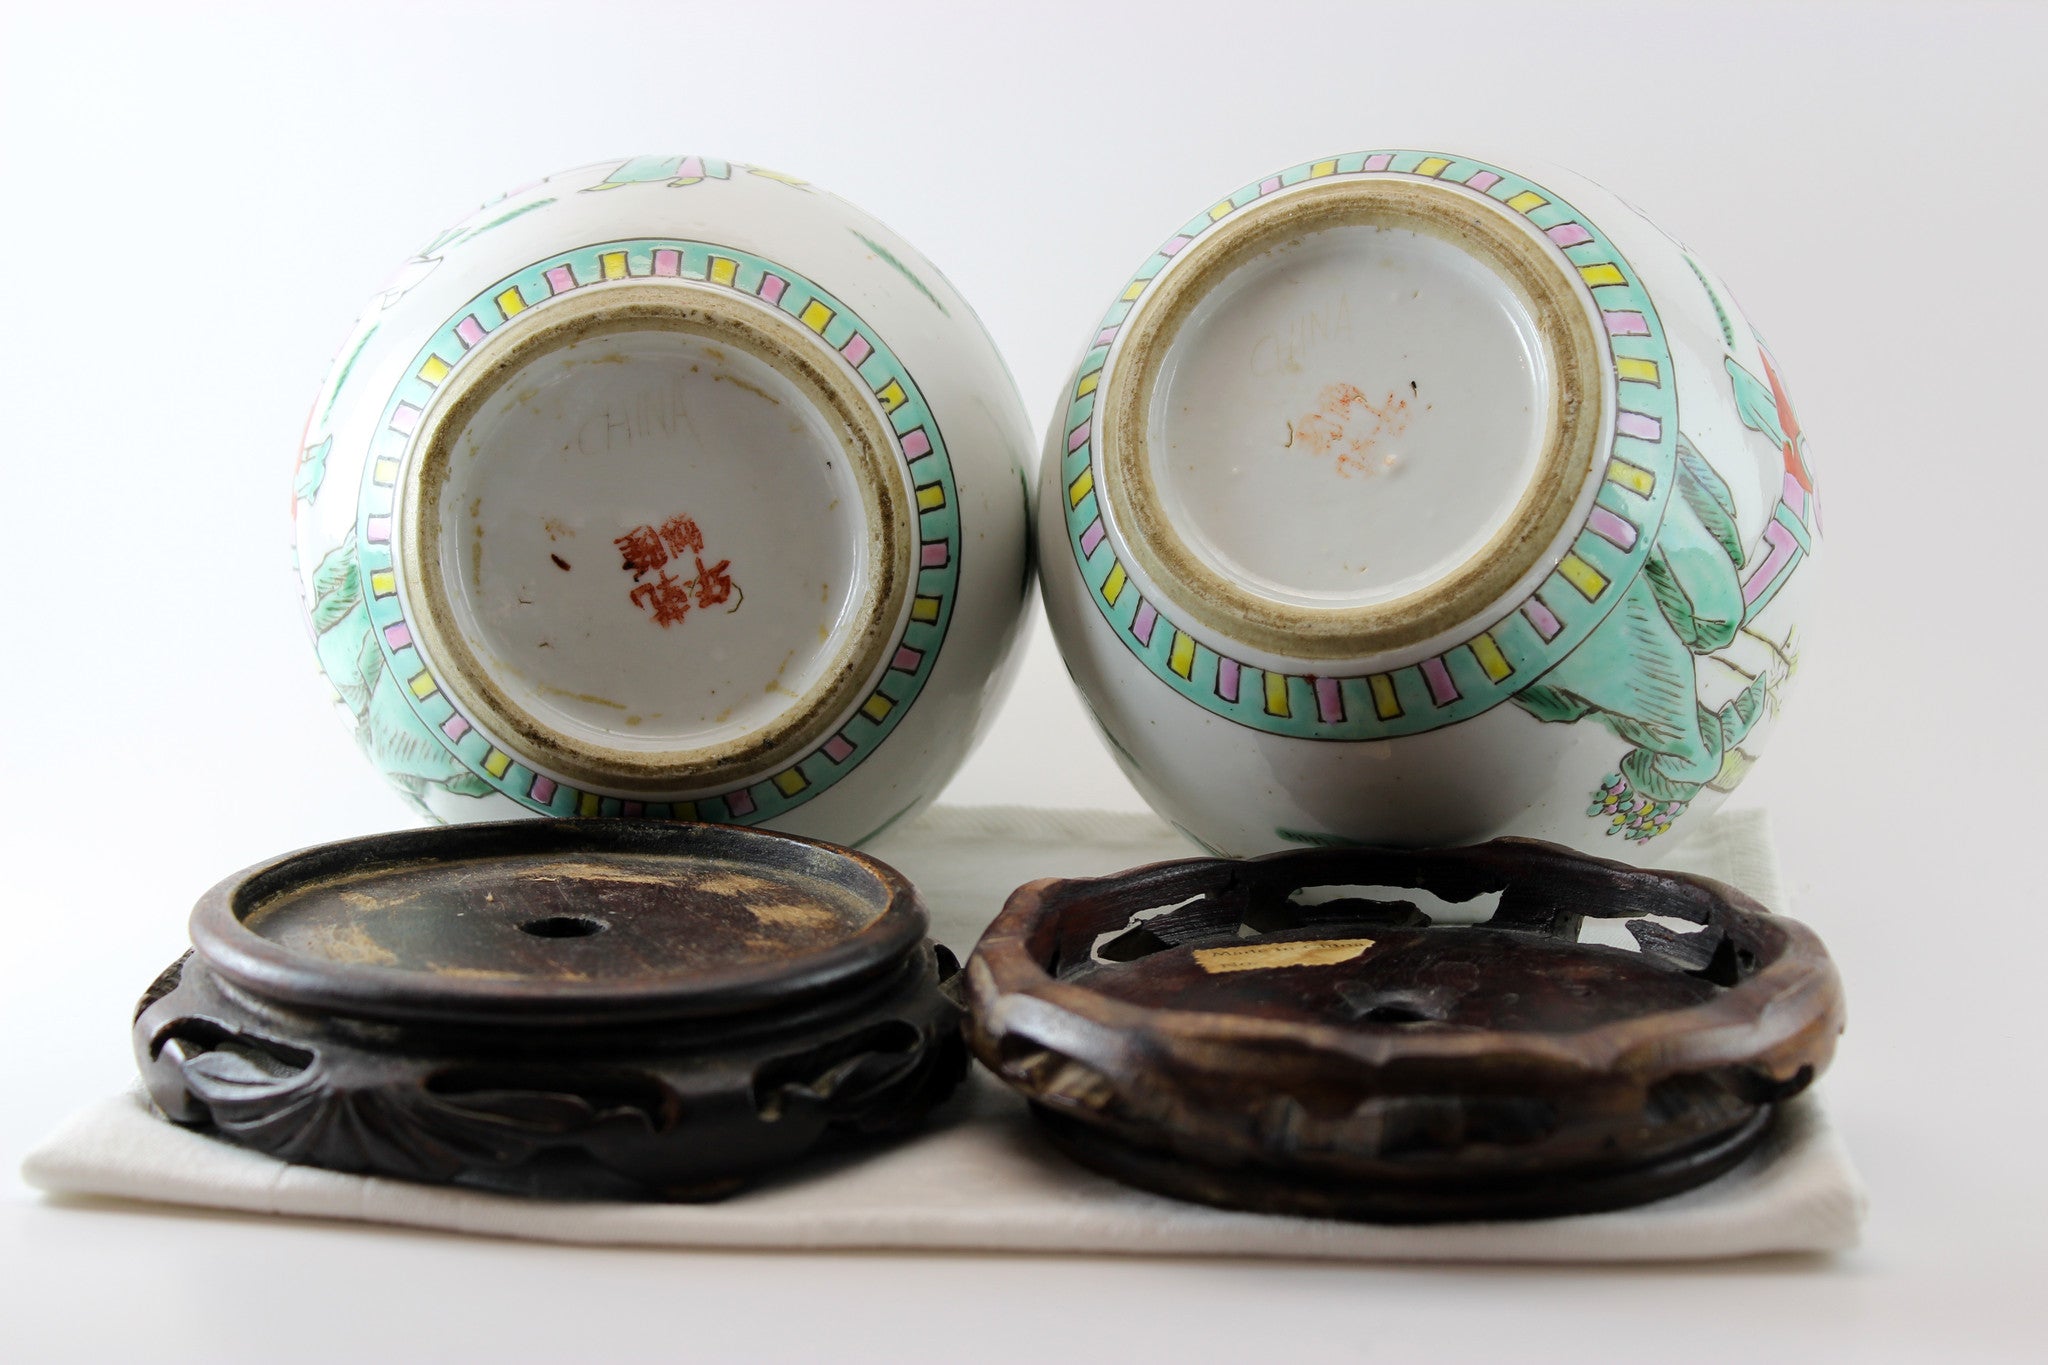 Antique Chinese Porcelain Ginger Jars